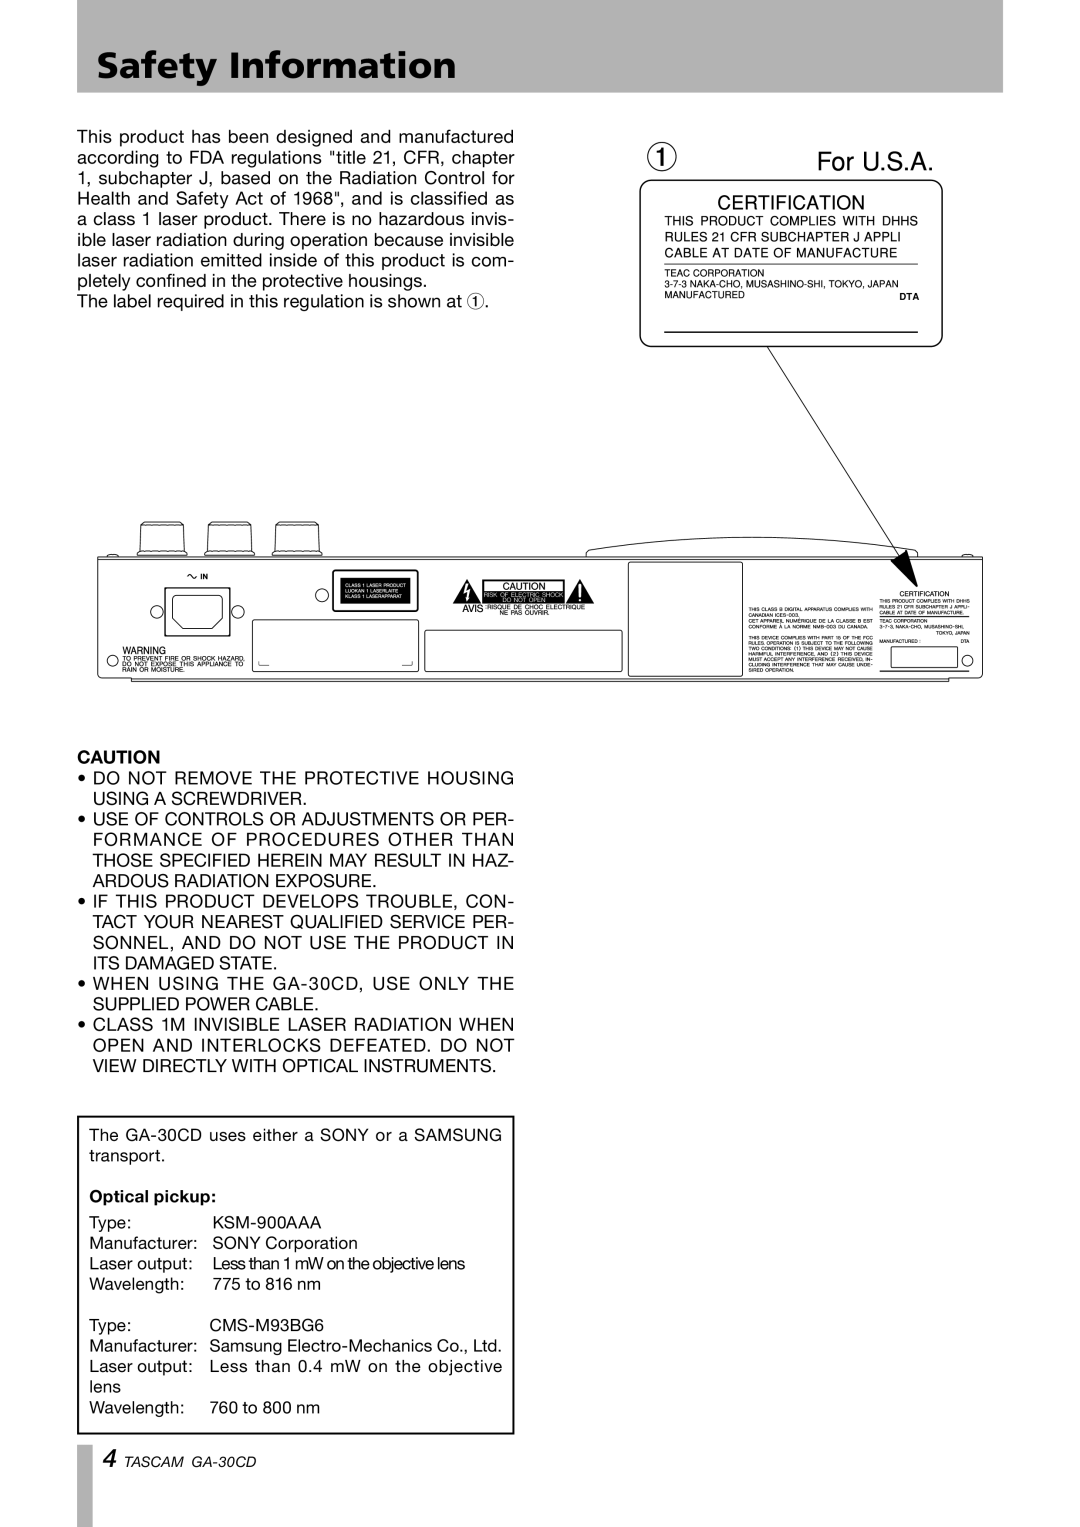 Tascam GA-30CD owner manual Safety Information, Optical pickup 